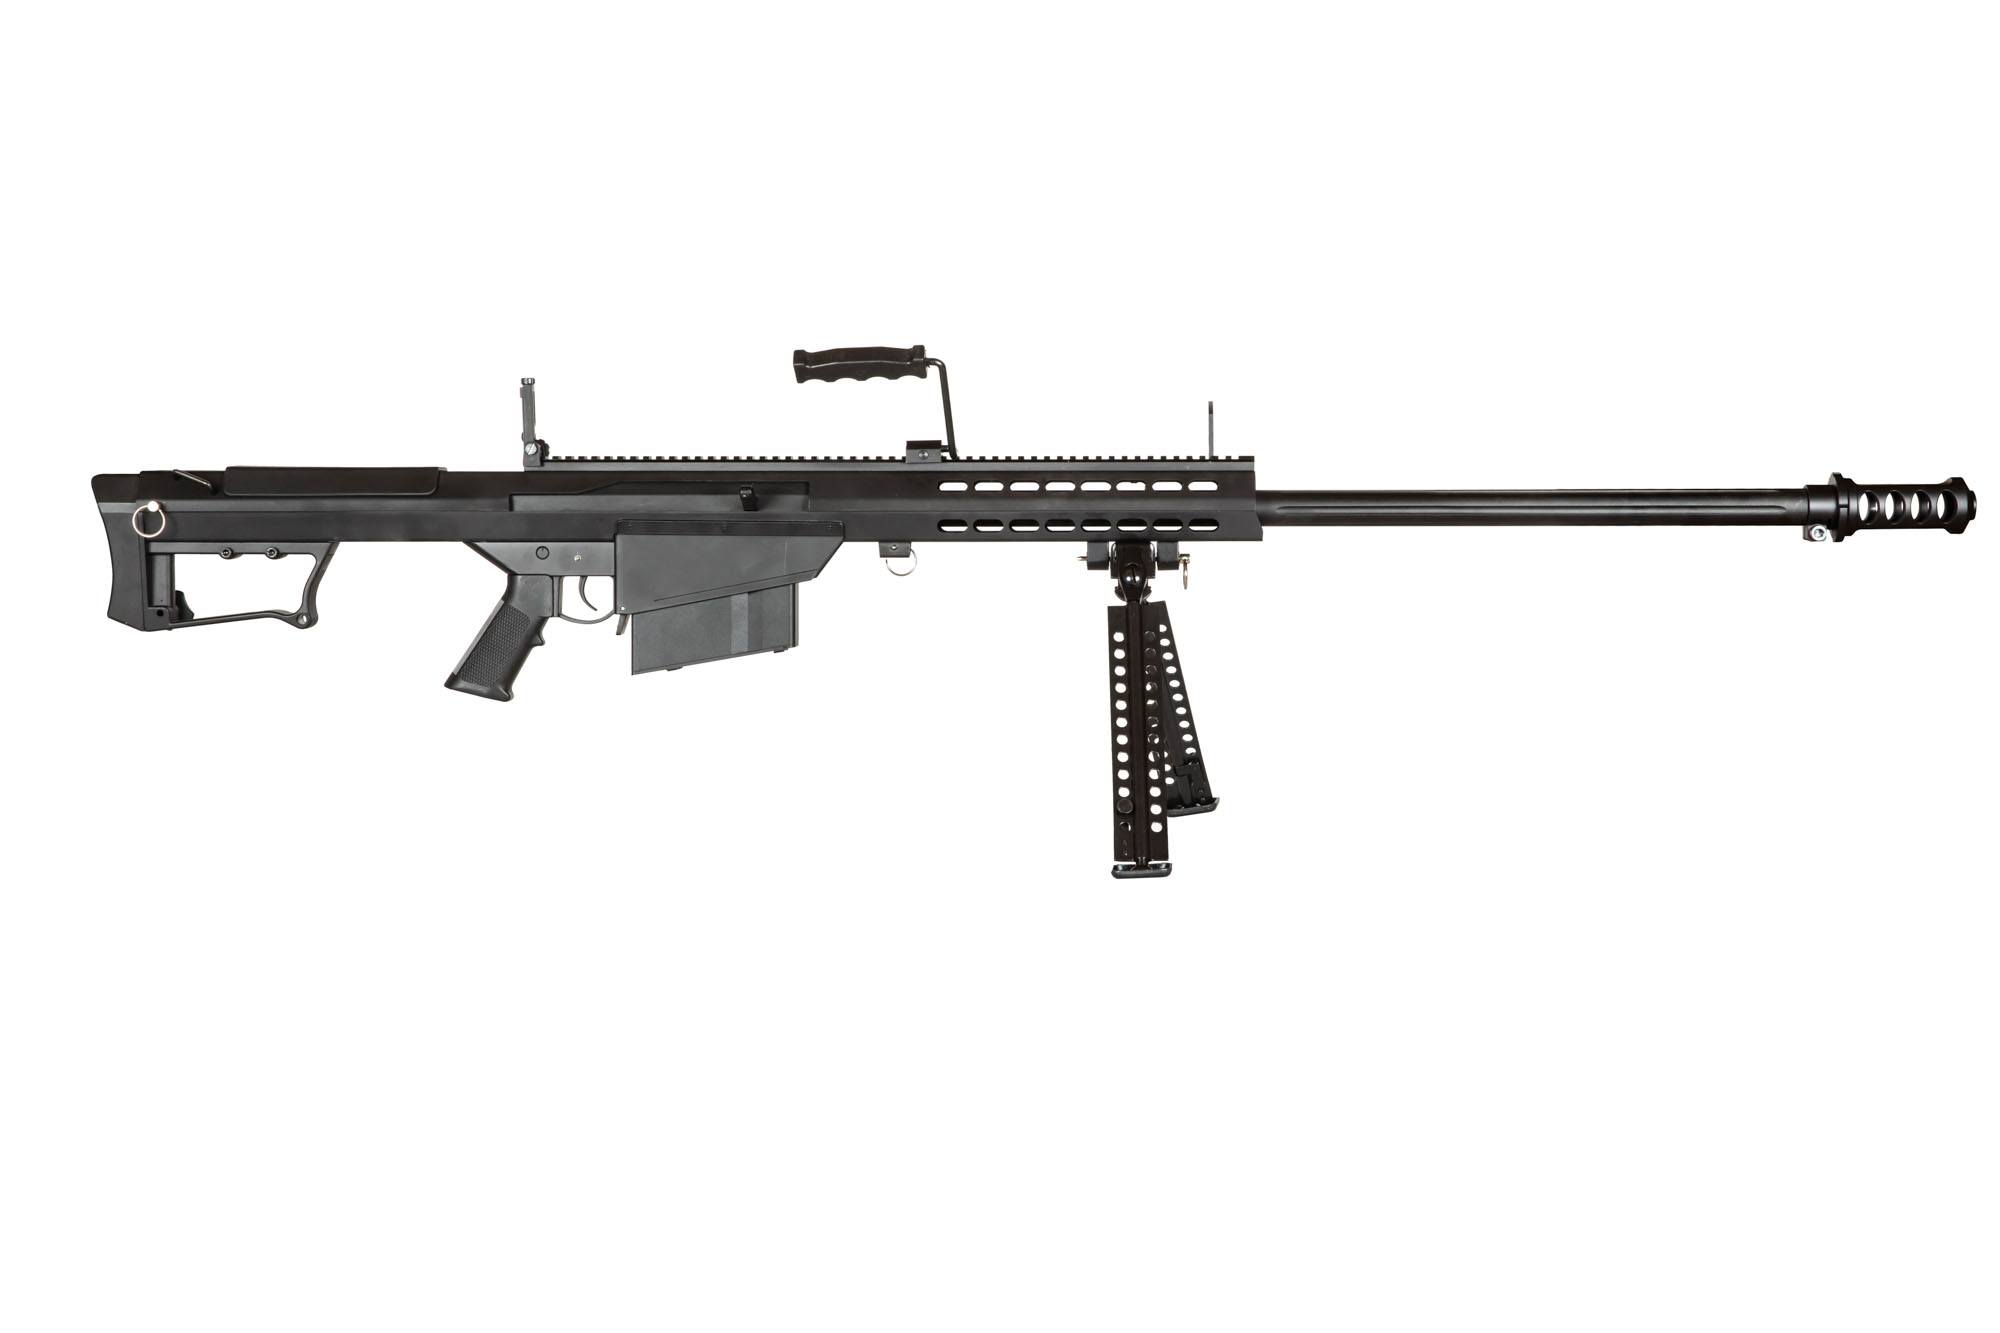 SW-024S Barrett M82 sniper rifle with bipod - black